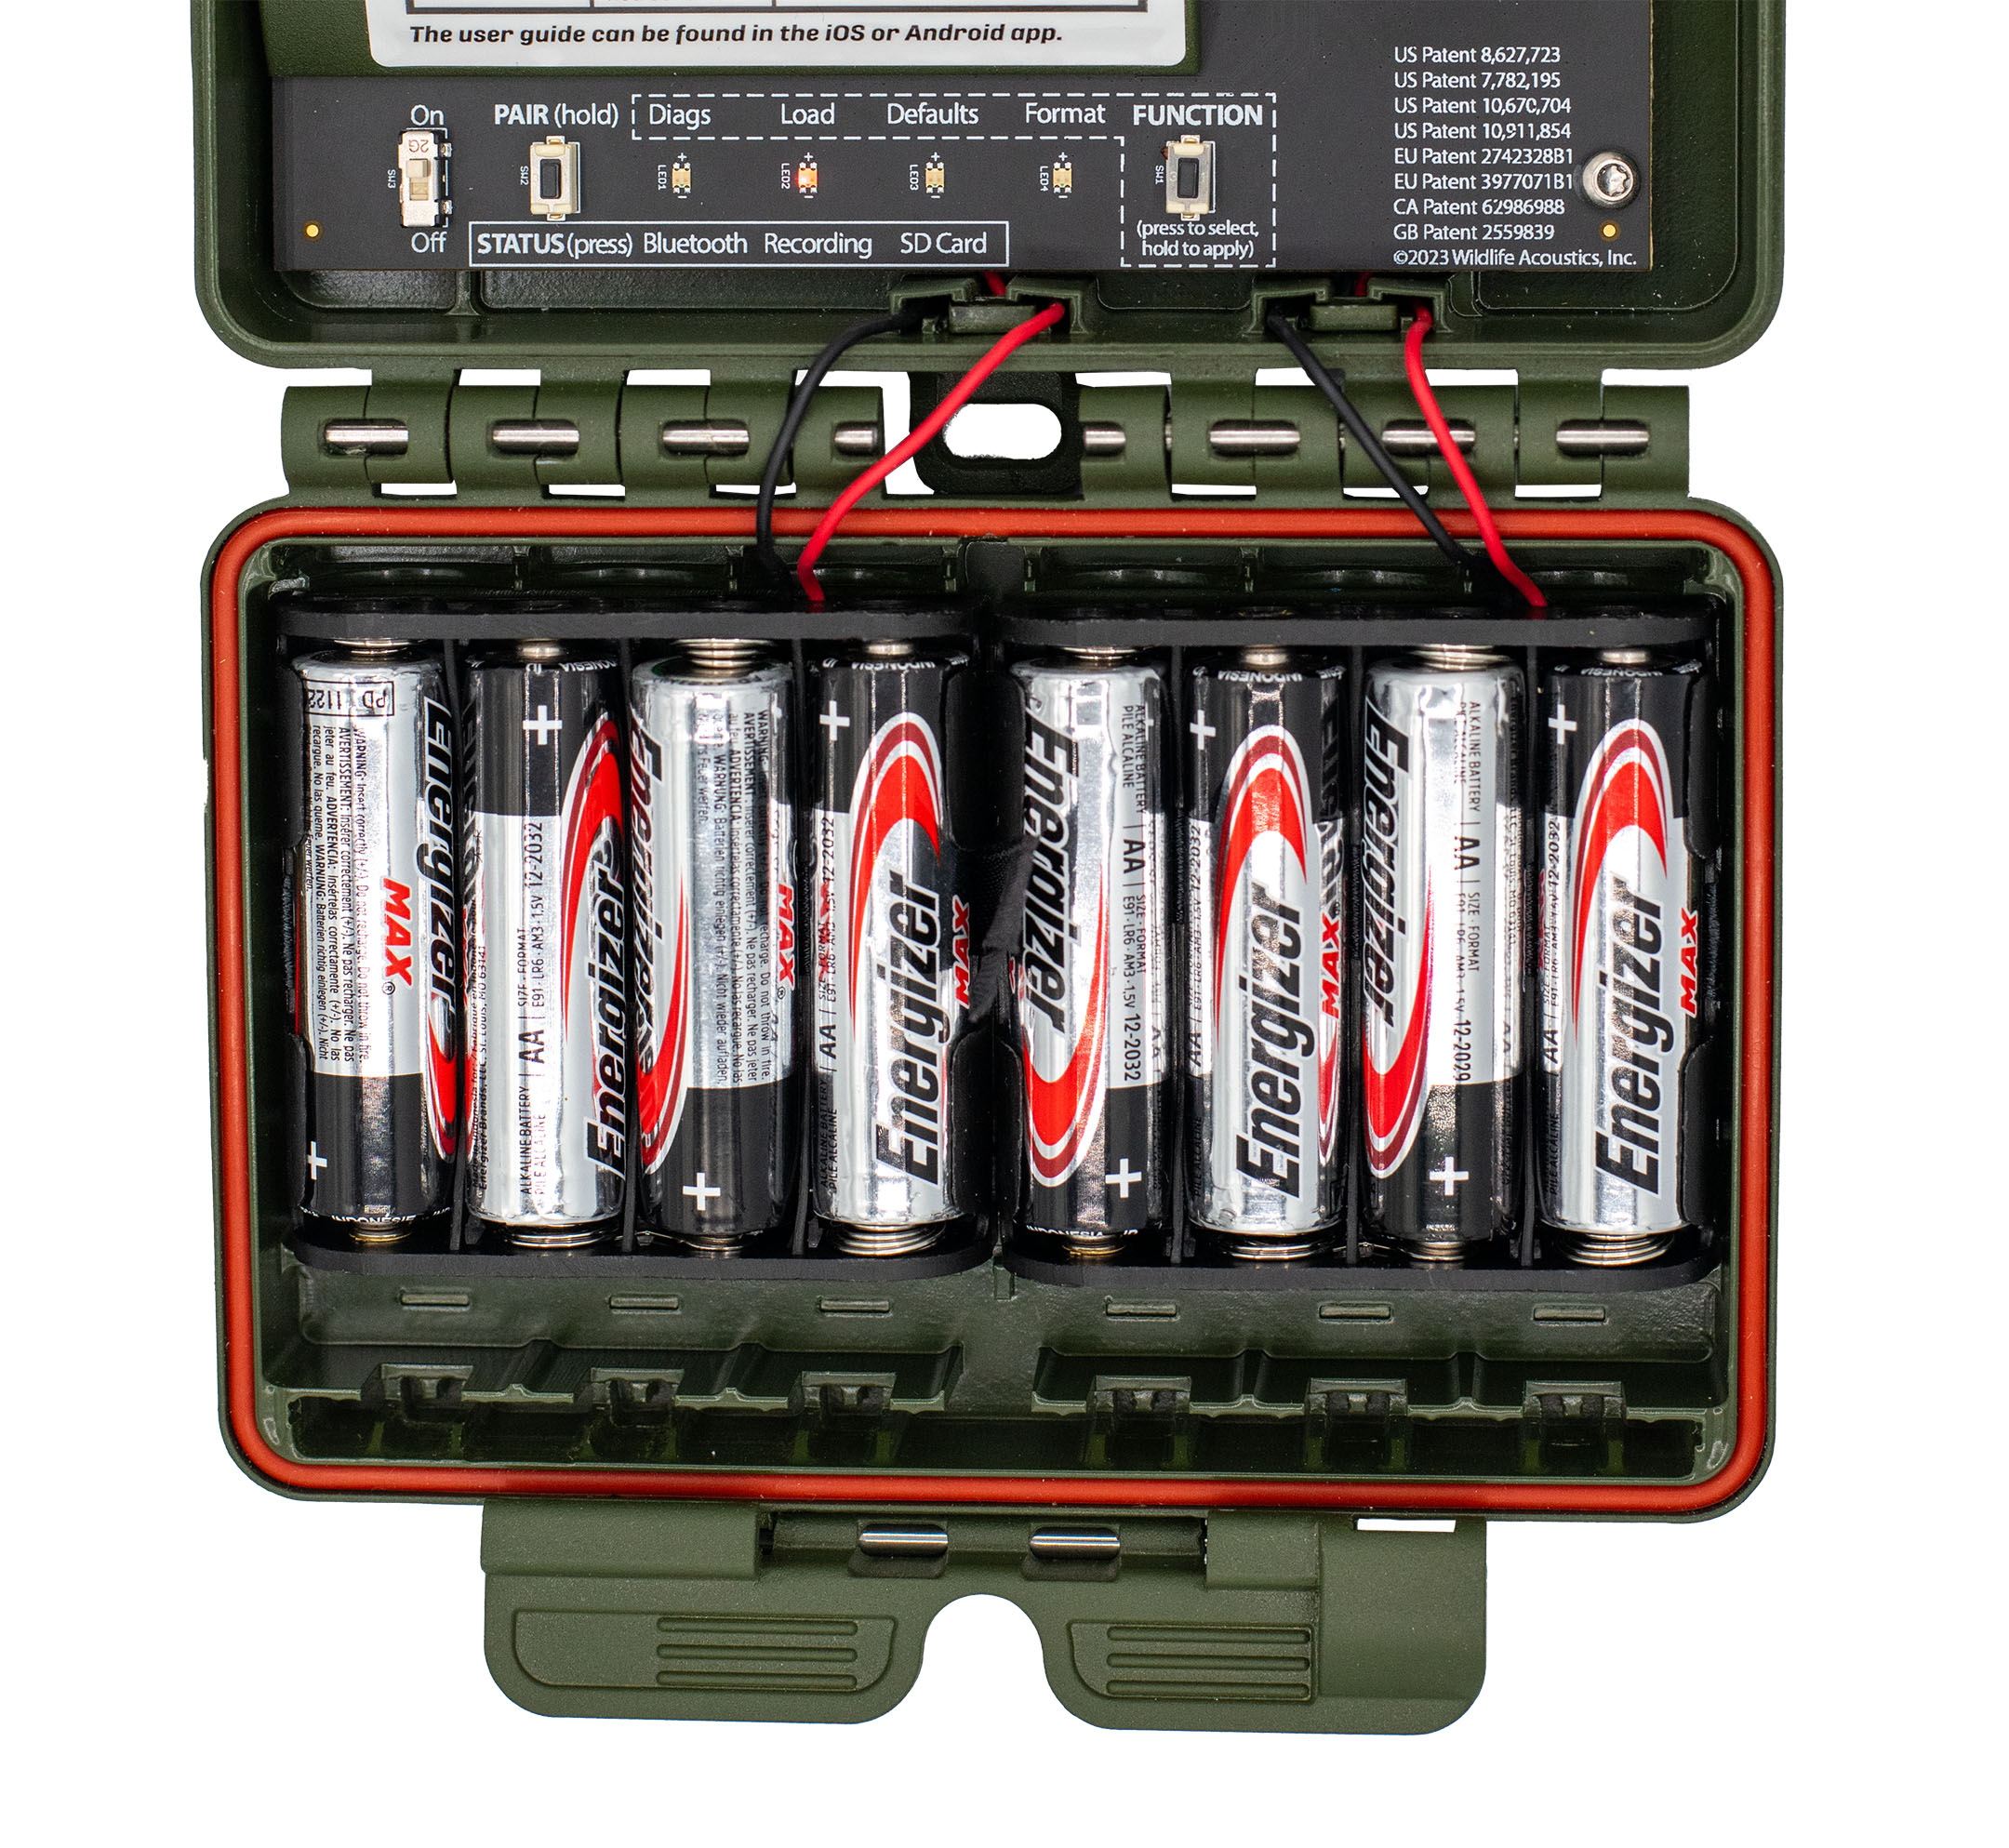 Las baterías AA deben alternar en orientación, comenzando con el extremo positivo hacia abajo en el compartimento de baterías más a la izquierda, suponiendo que la grabadora esté completamente abierta y el compartimento de baterías esté debajo del panel de control.